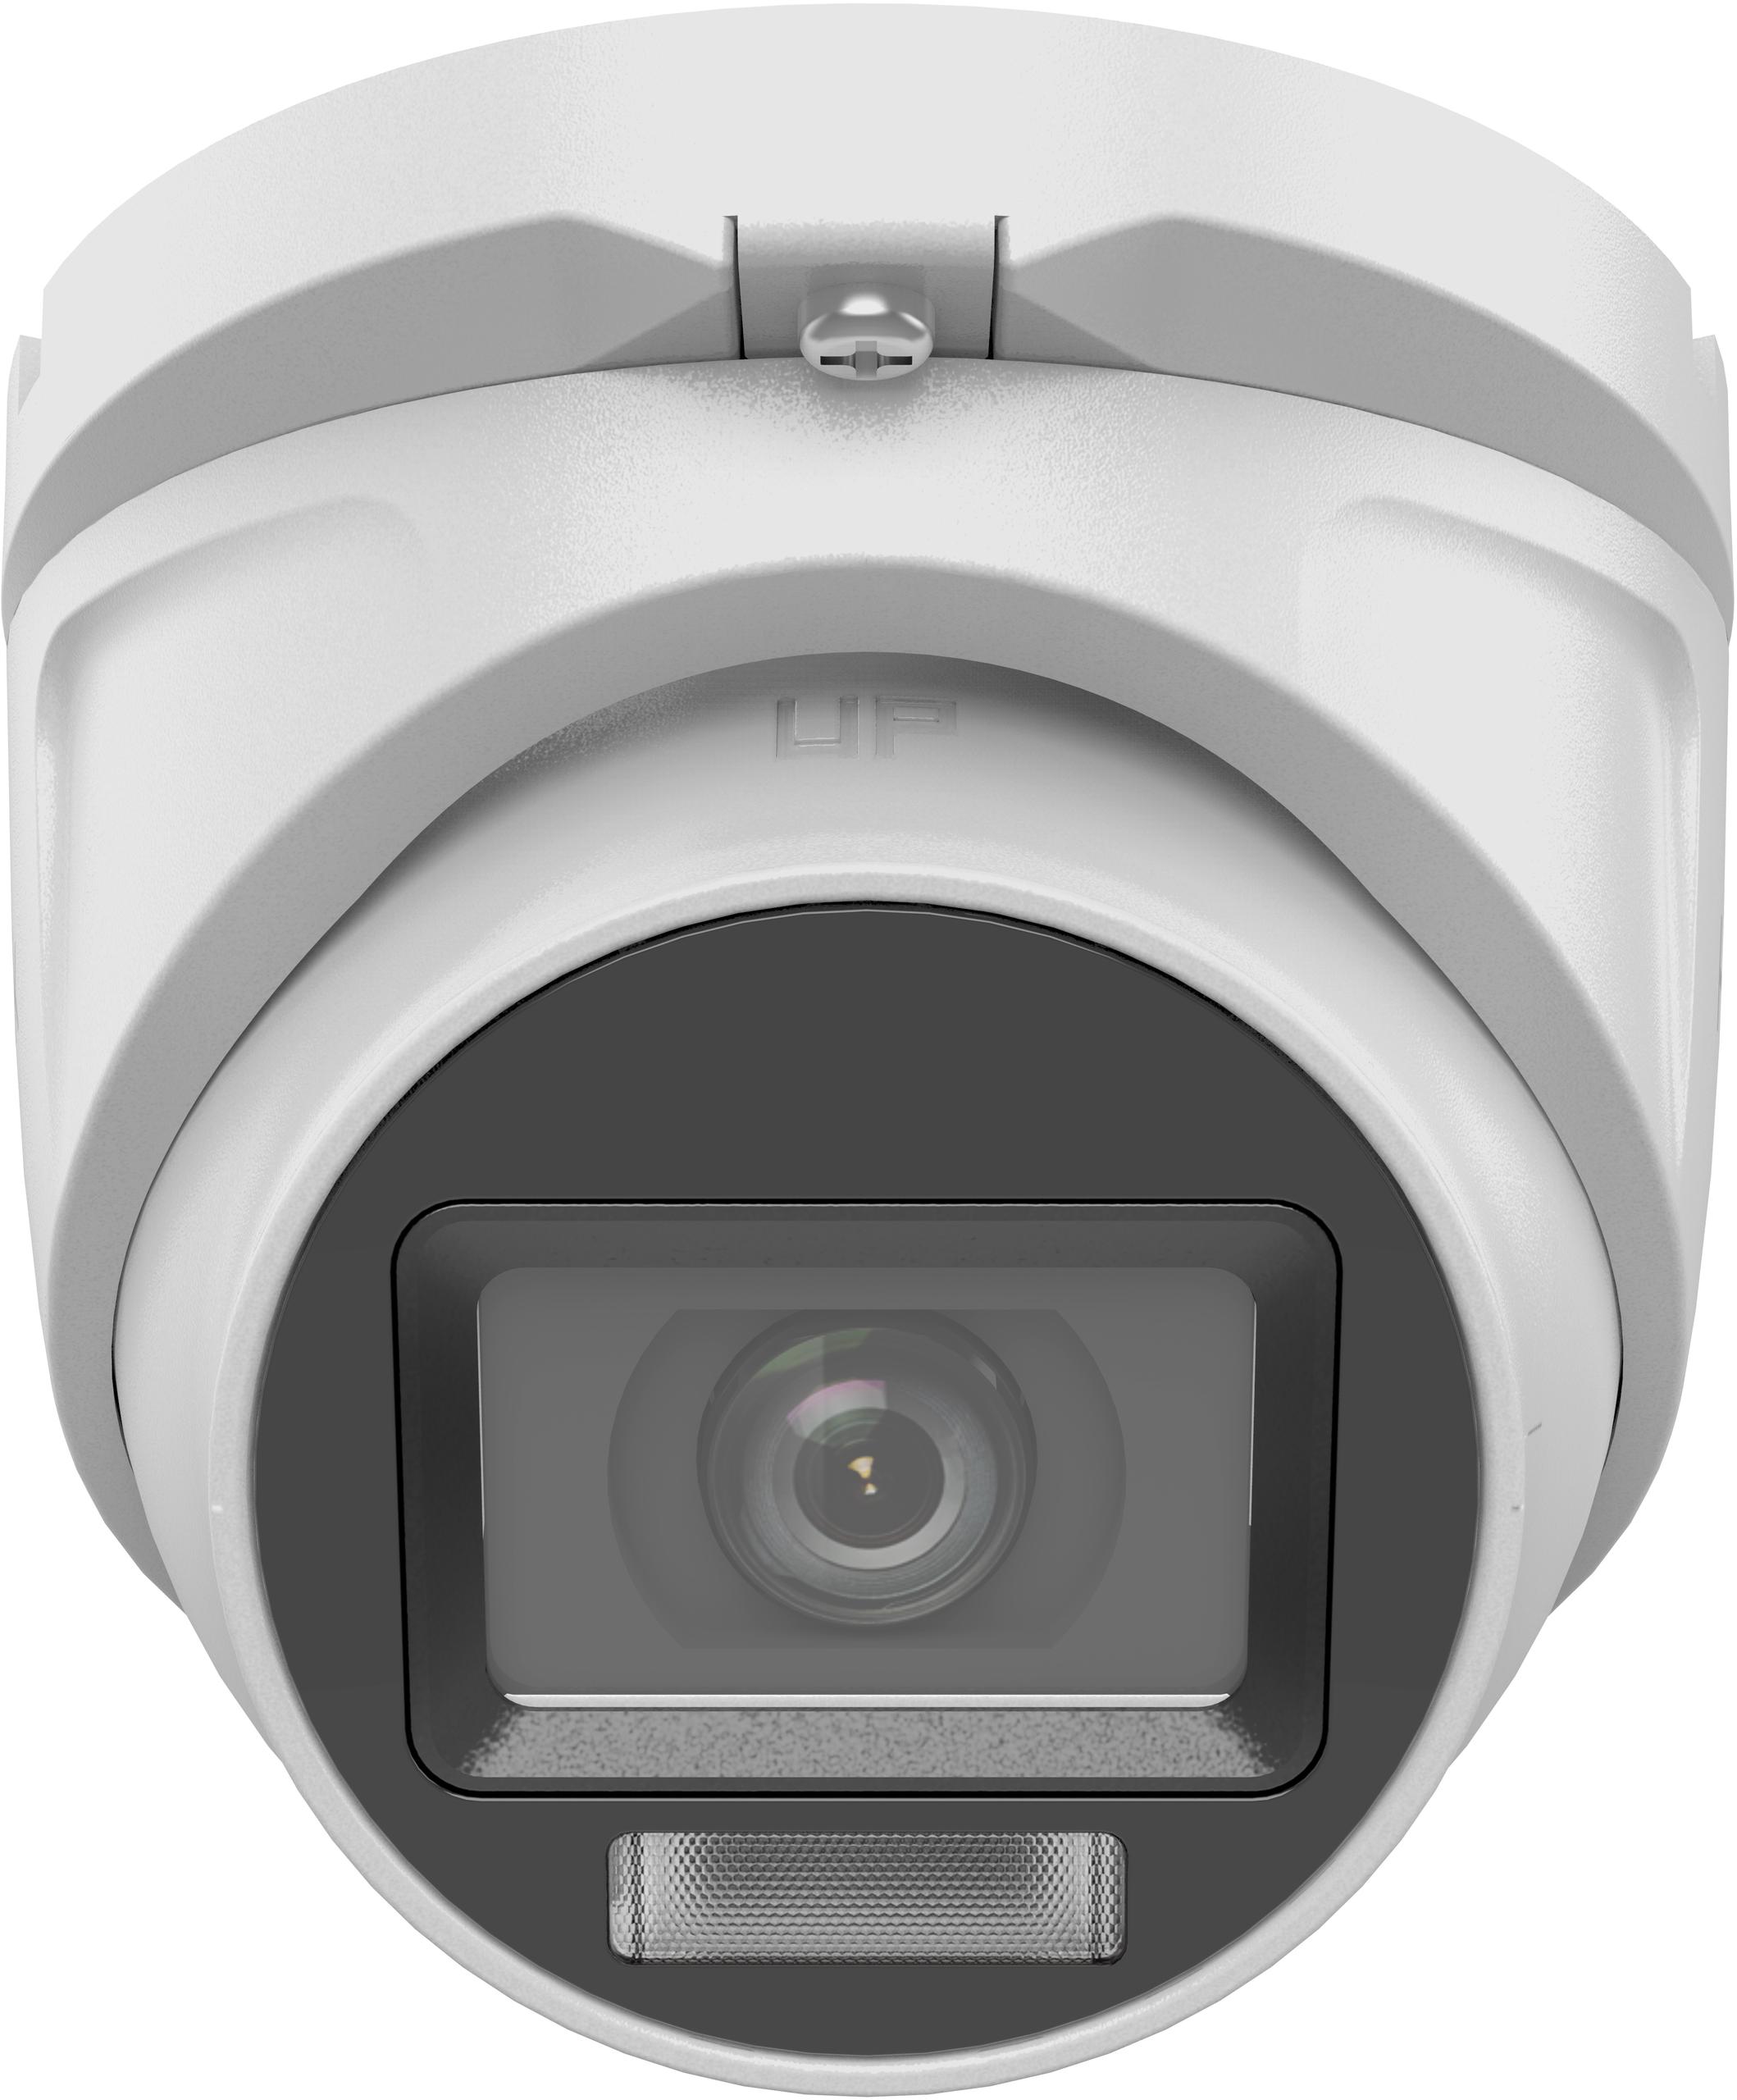 Kamera TVI Hilook turret 5MP TVICAM-T5M-20DL 2.8mm- nocne widzenie do 20m dzięki opcji dual light